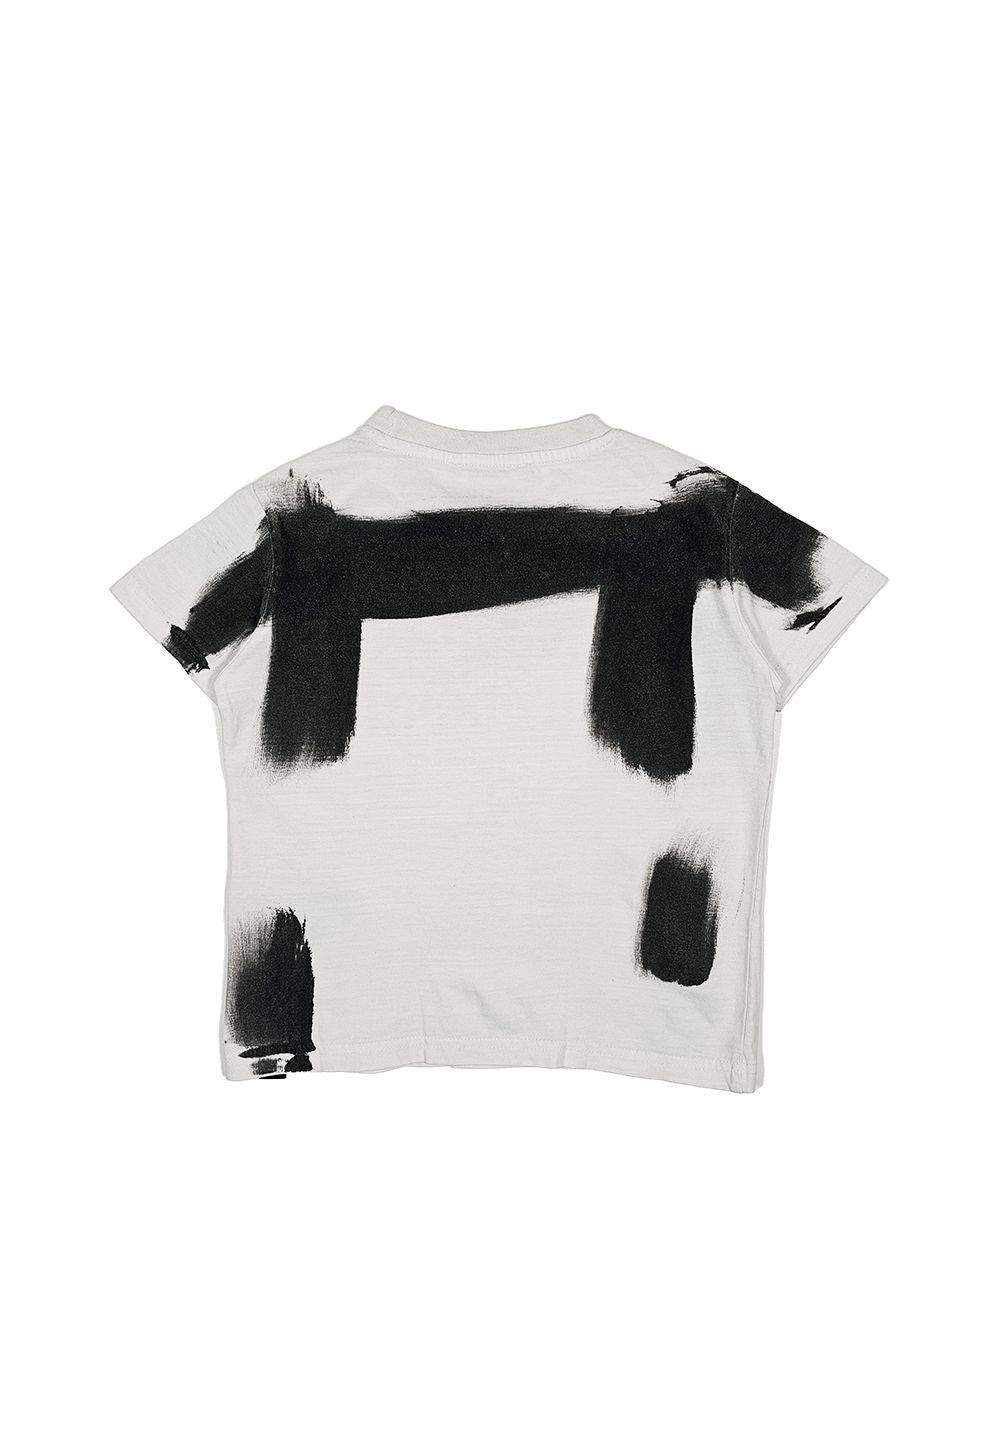 T-shirt bianca-nera per bambino - Primamoda kids